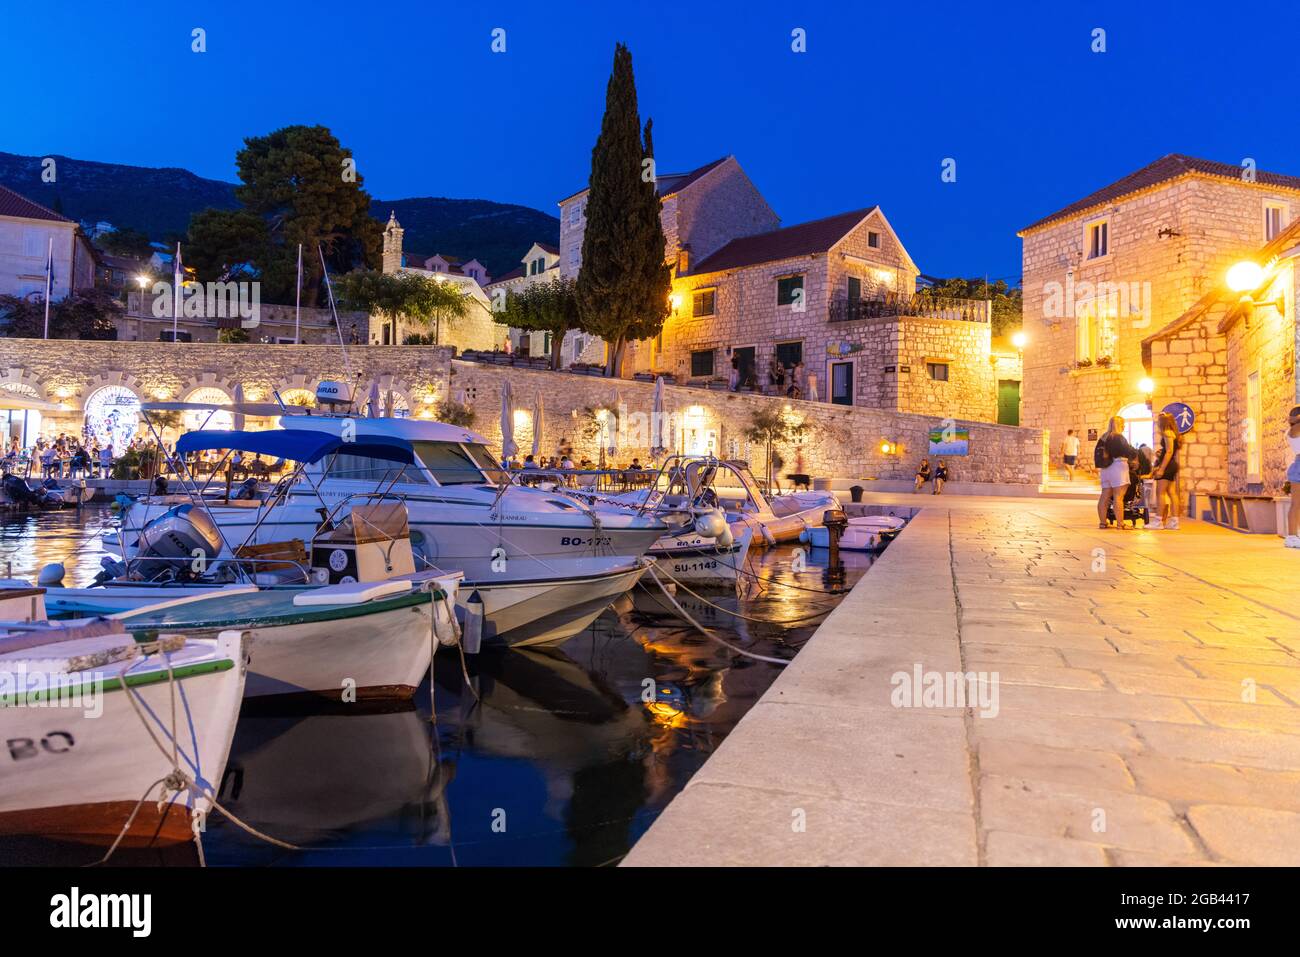 Le crépuscule avec des réverbères dans la ville de bol sur l'île de Brac, Croatie Banque D'Images